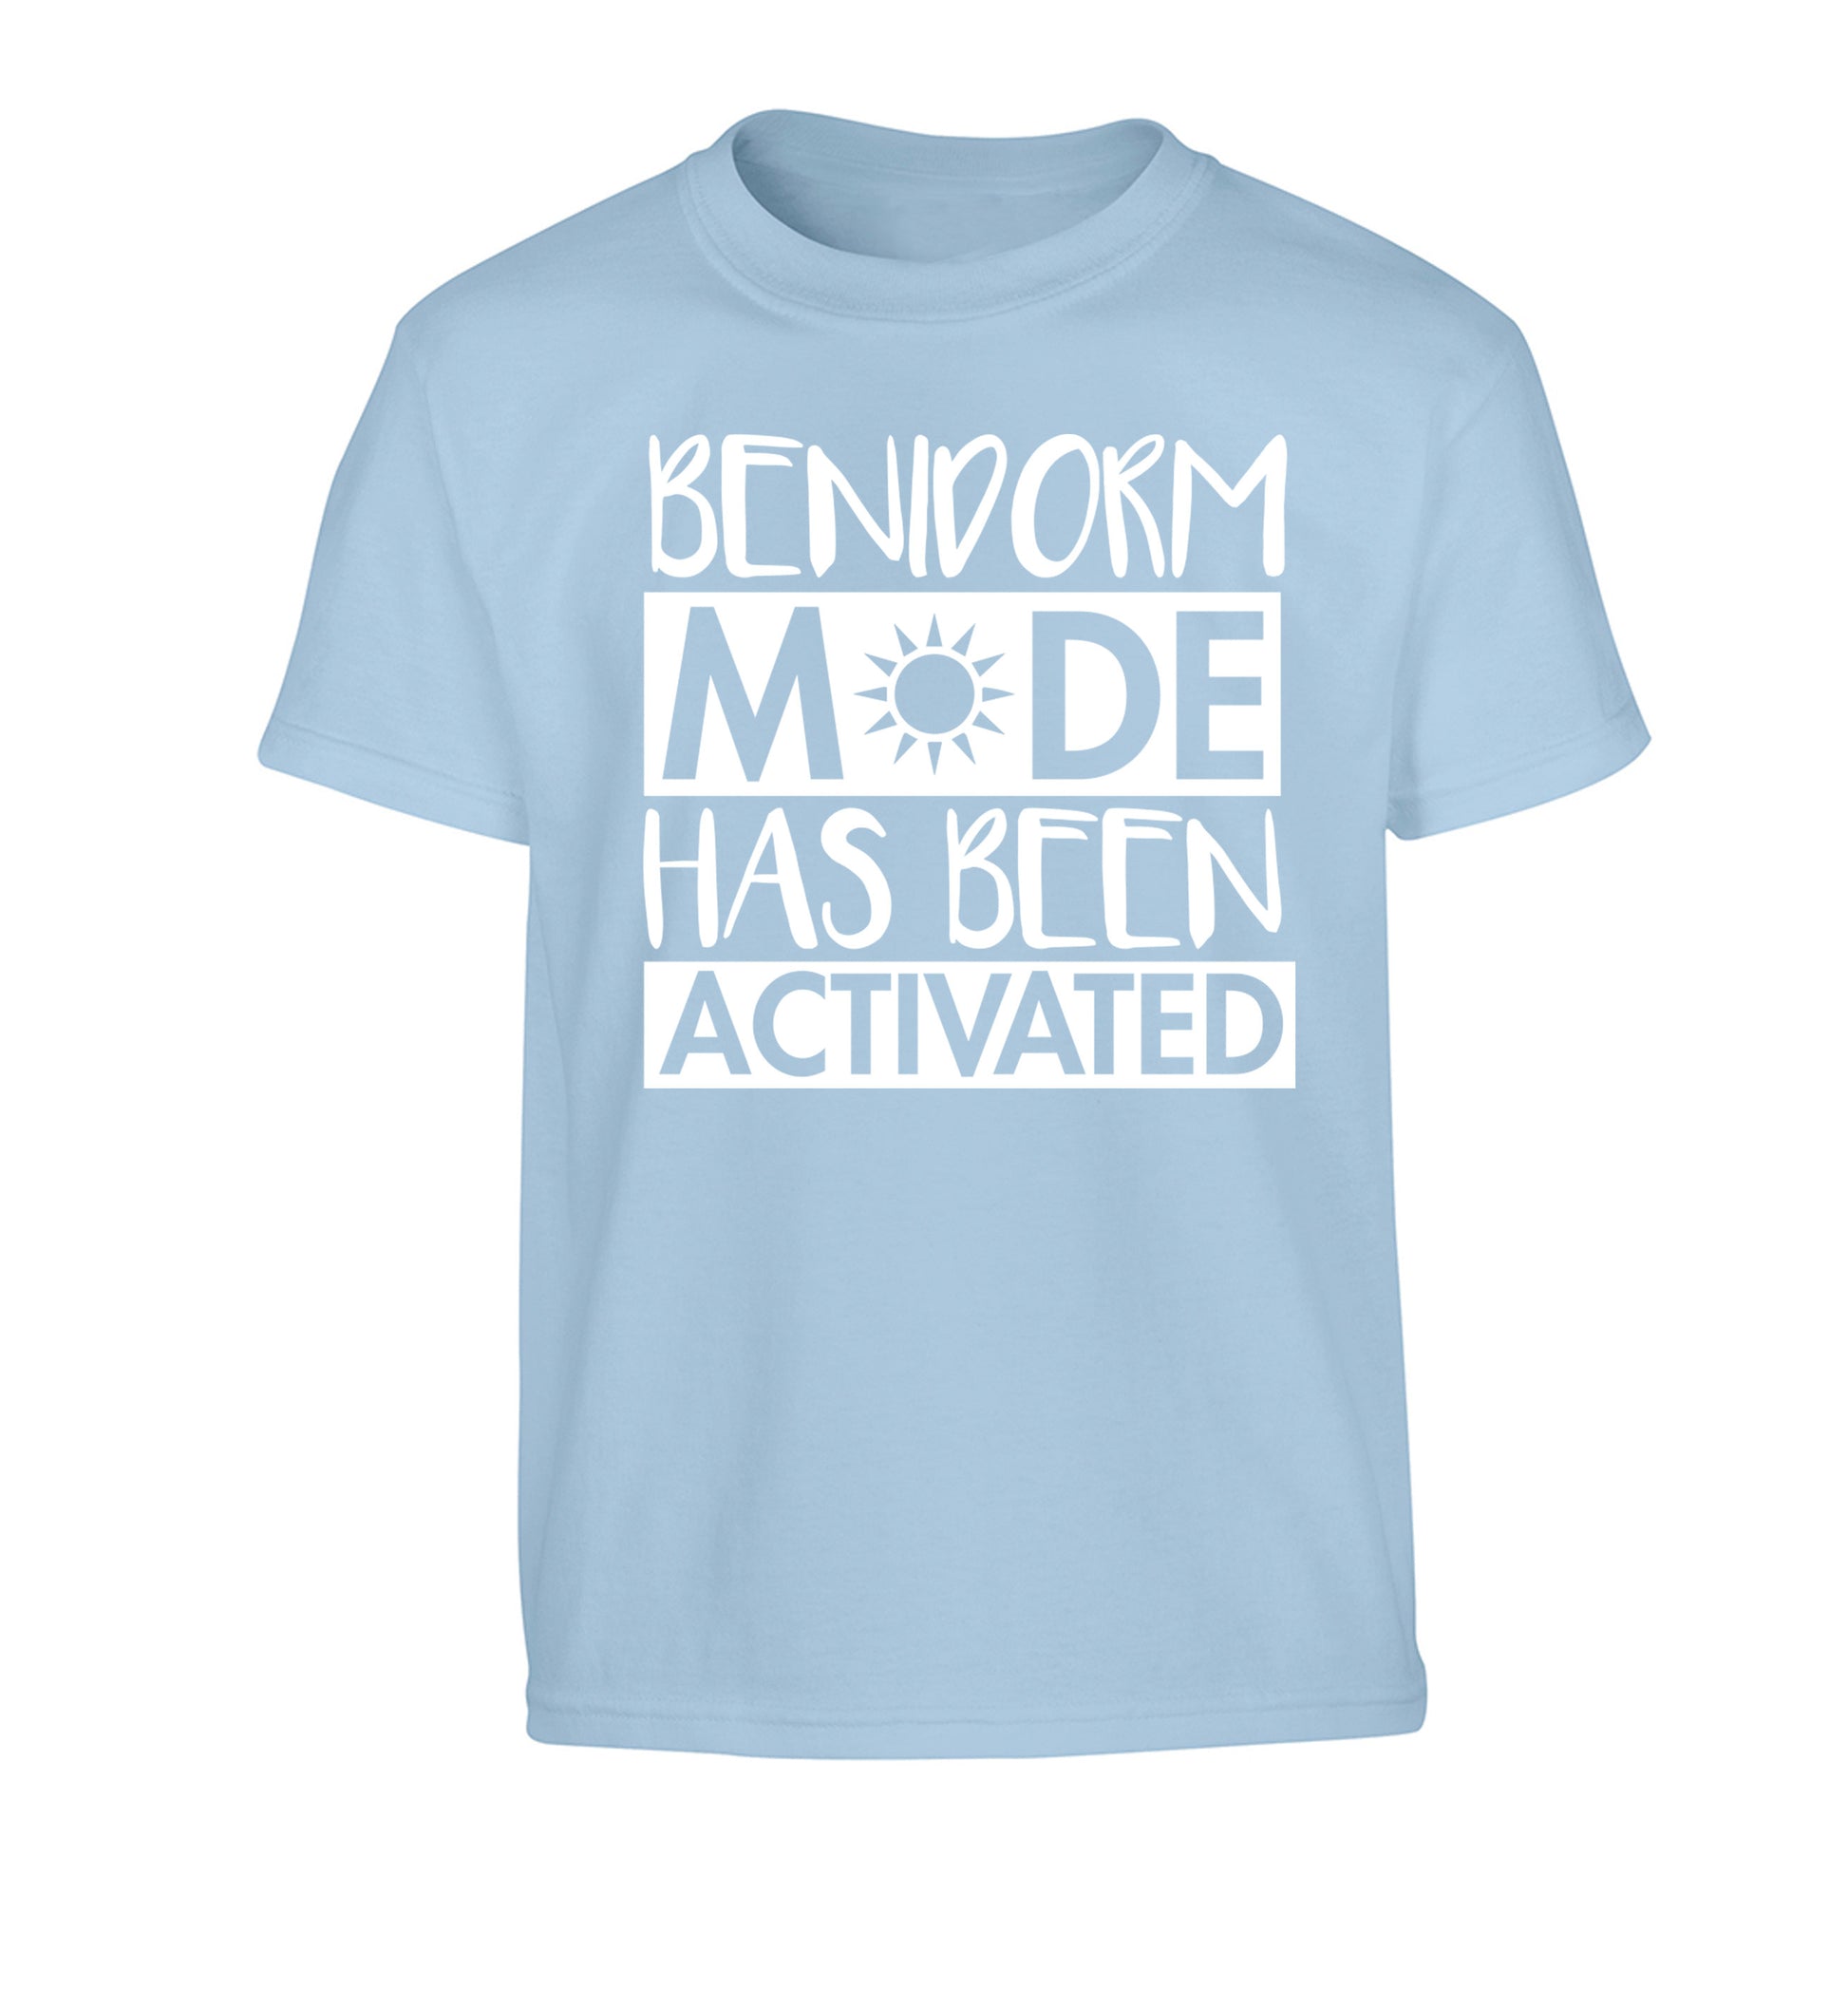 Benidorm mode has been activated Children's light blue Tshirt 12-14 Years